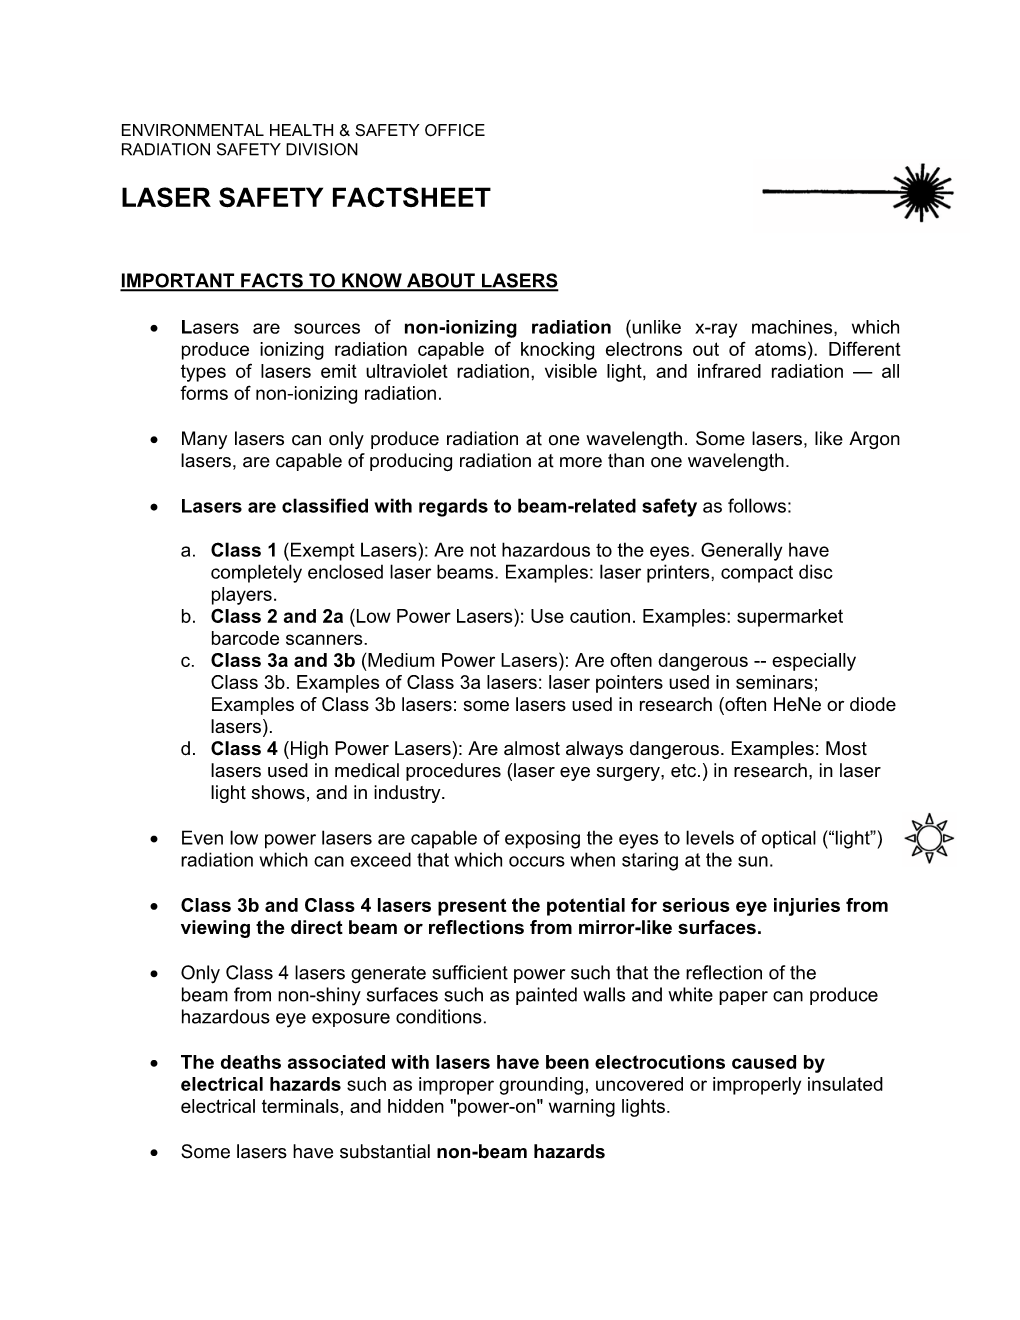 Laser Safety Factsheet